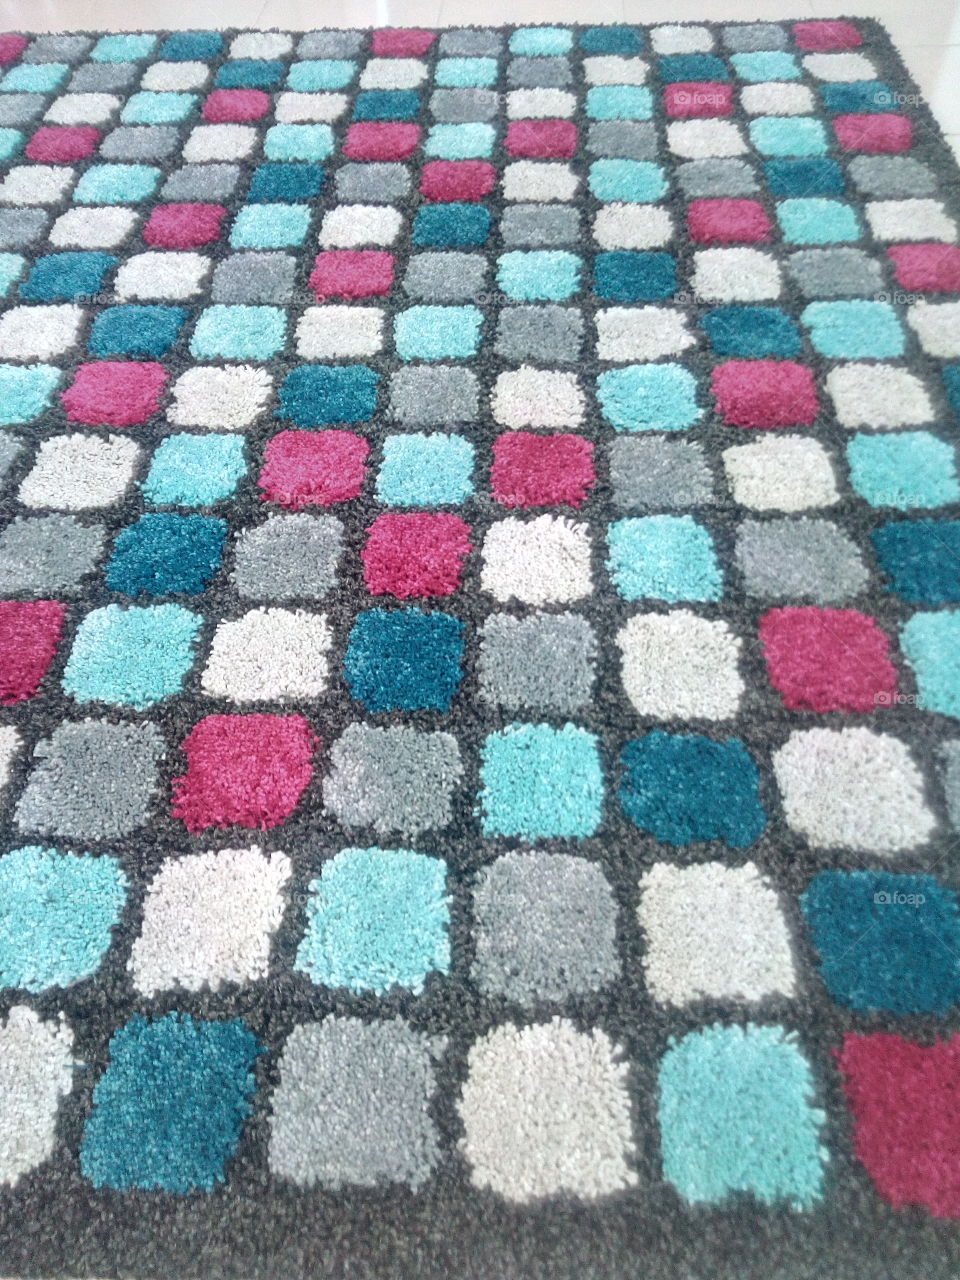 my mat